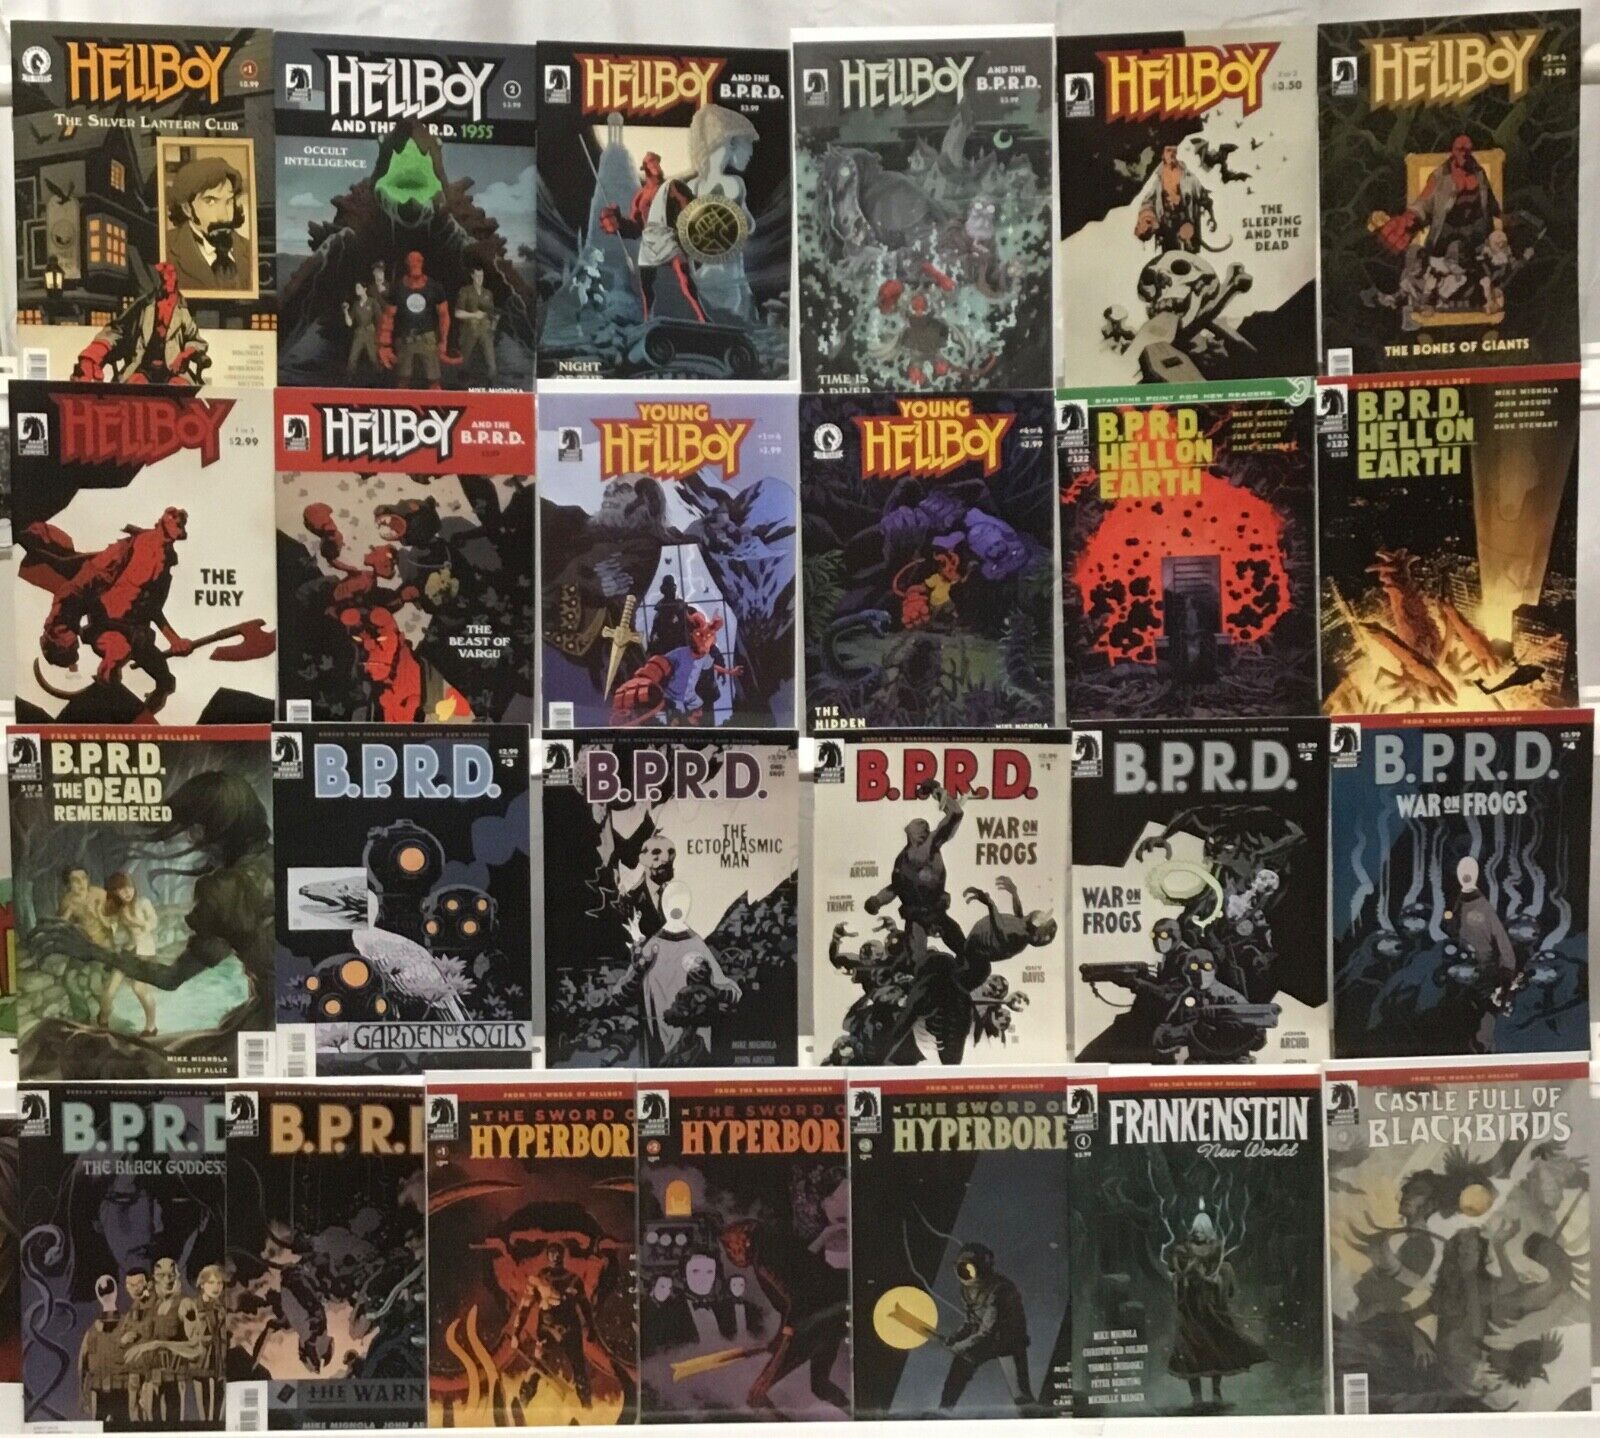 Dark Horse Comics Hellboy Comic Book Lot of 25 - B.P.R.D., Hyperborea